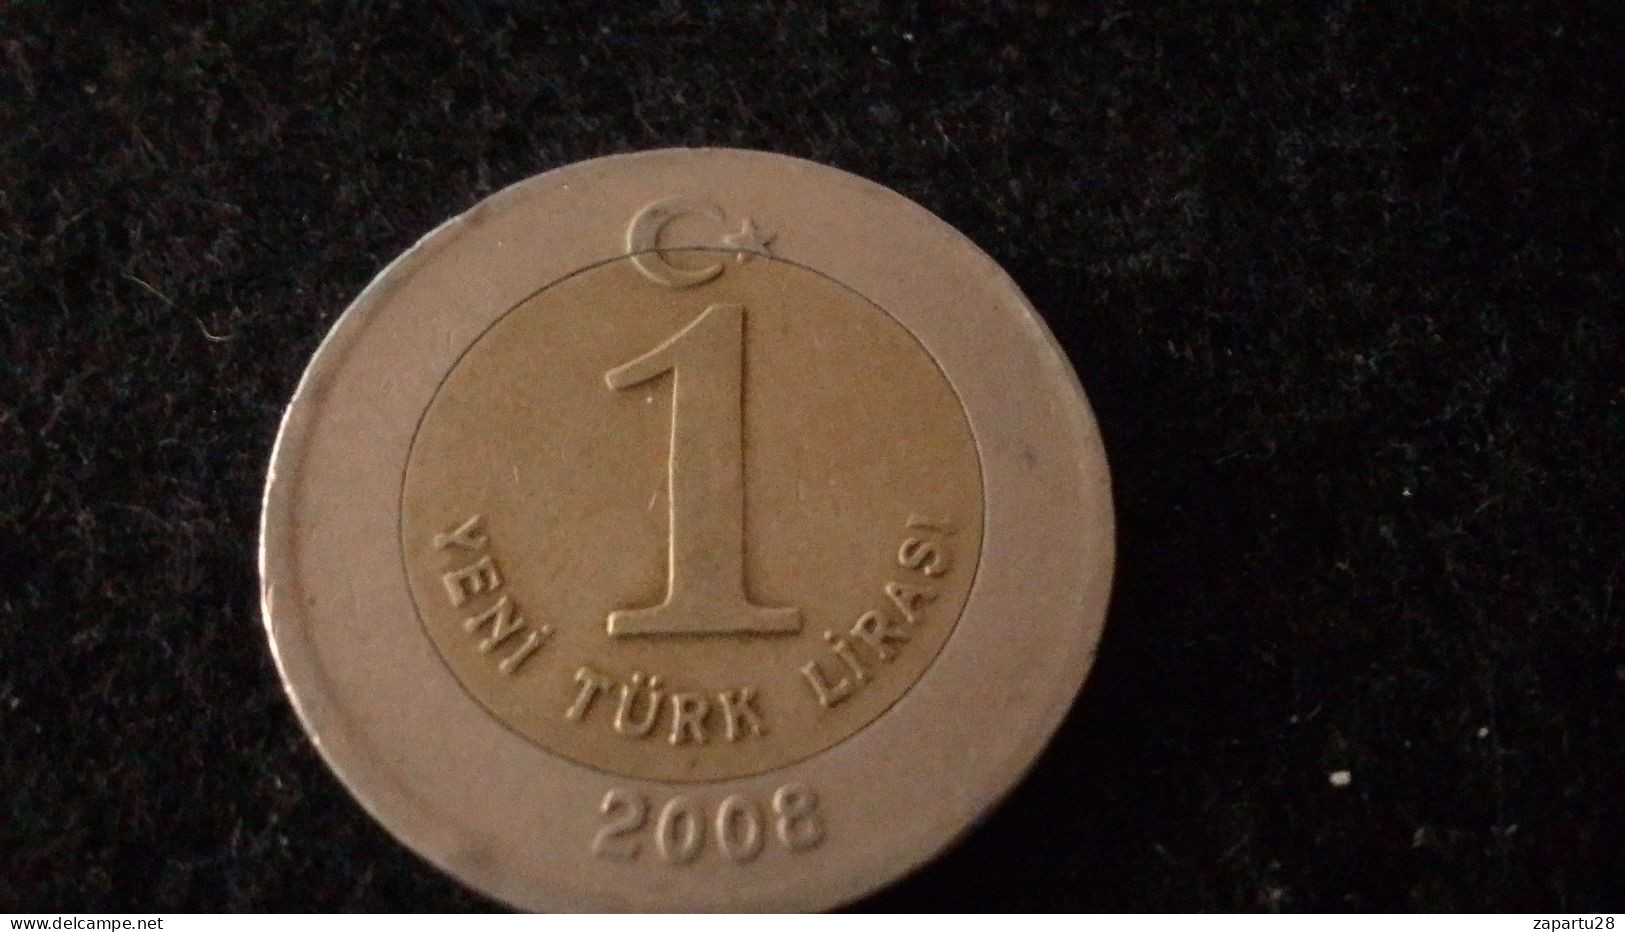 TÜRKİYE - 2008 - 1 YENİ TÜEK LİRASI - Turquia